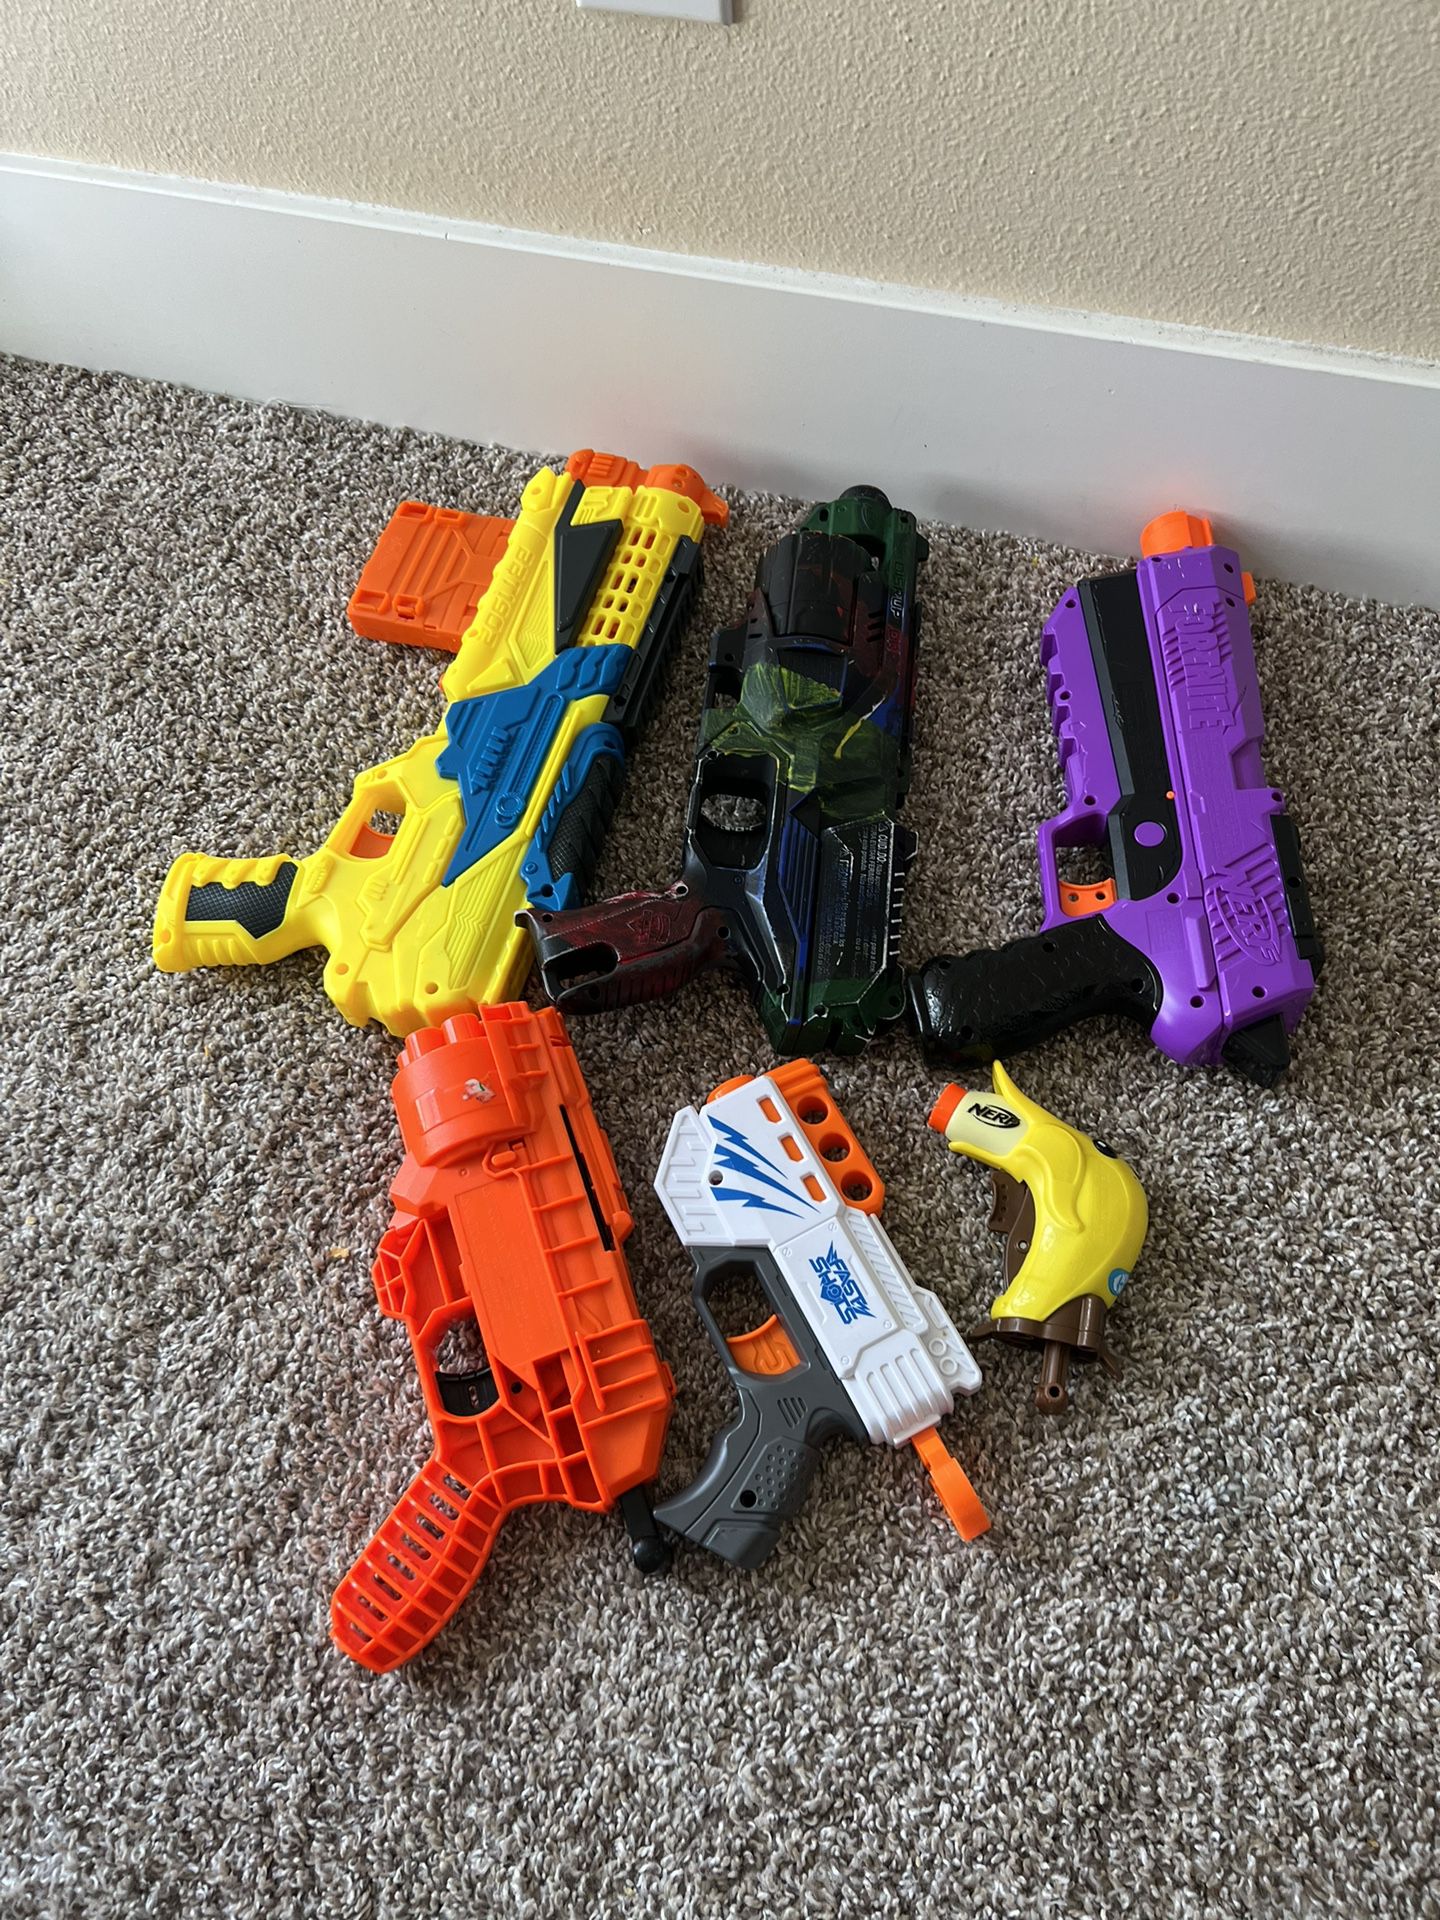 Nerf Guns Set Free